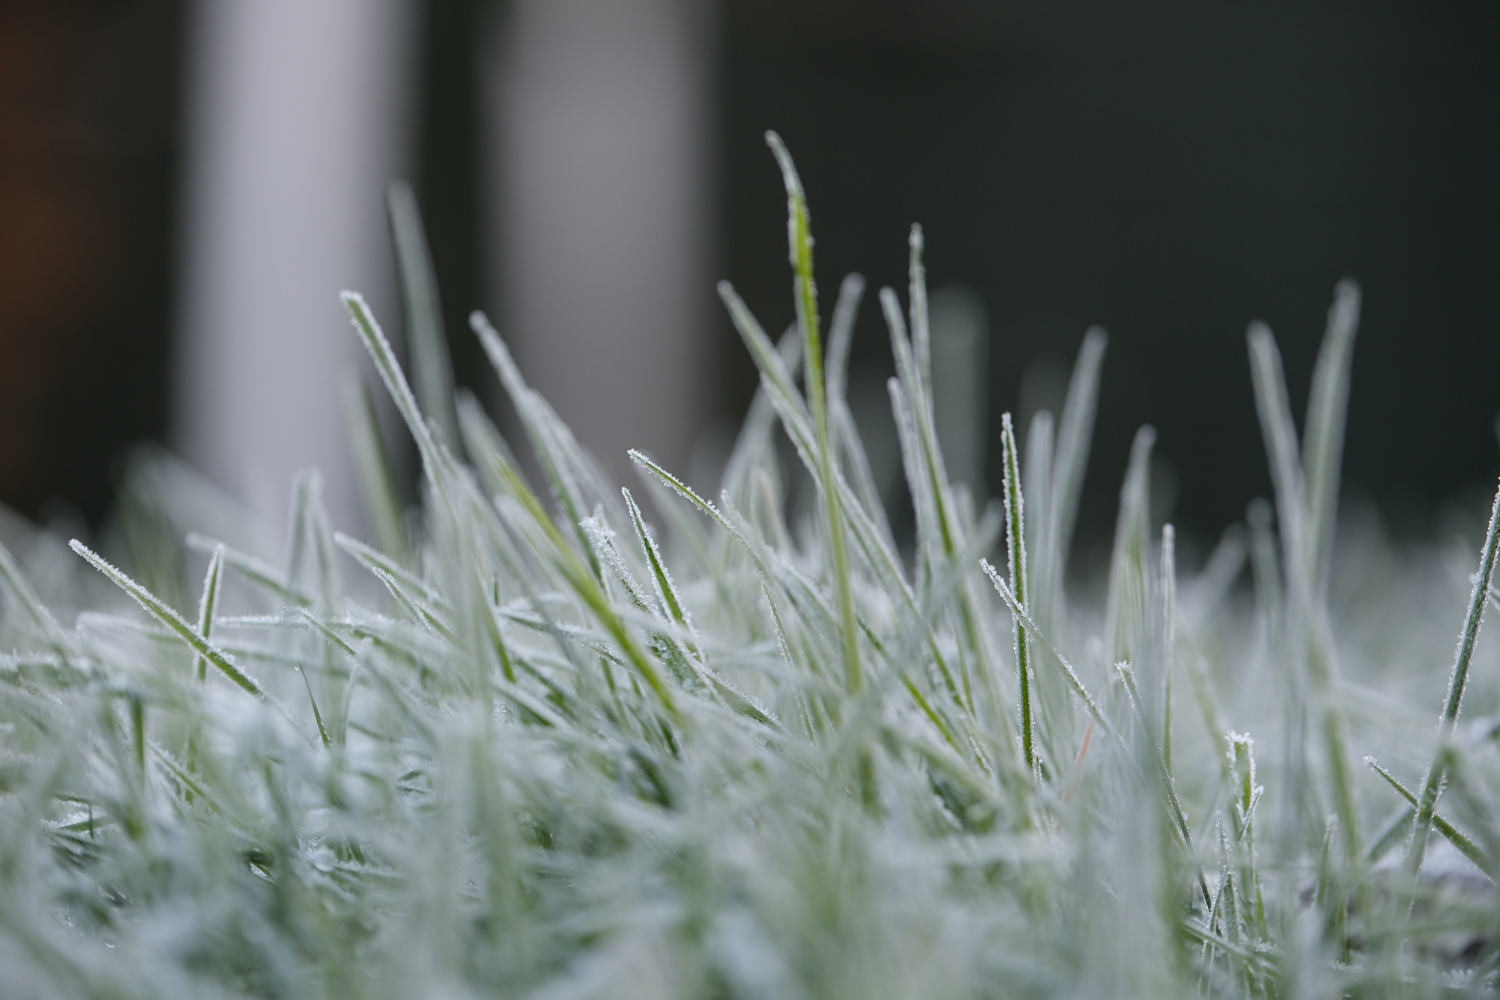 Fujifilm X-T5 camera samples frost grass